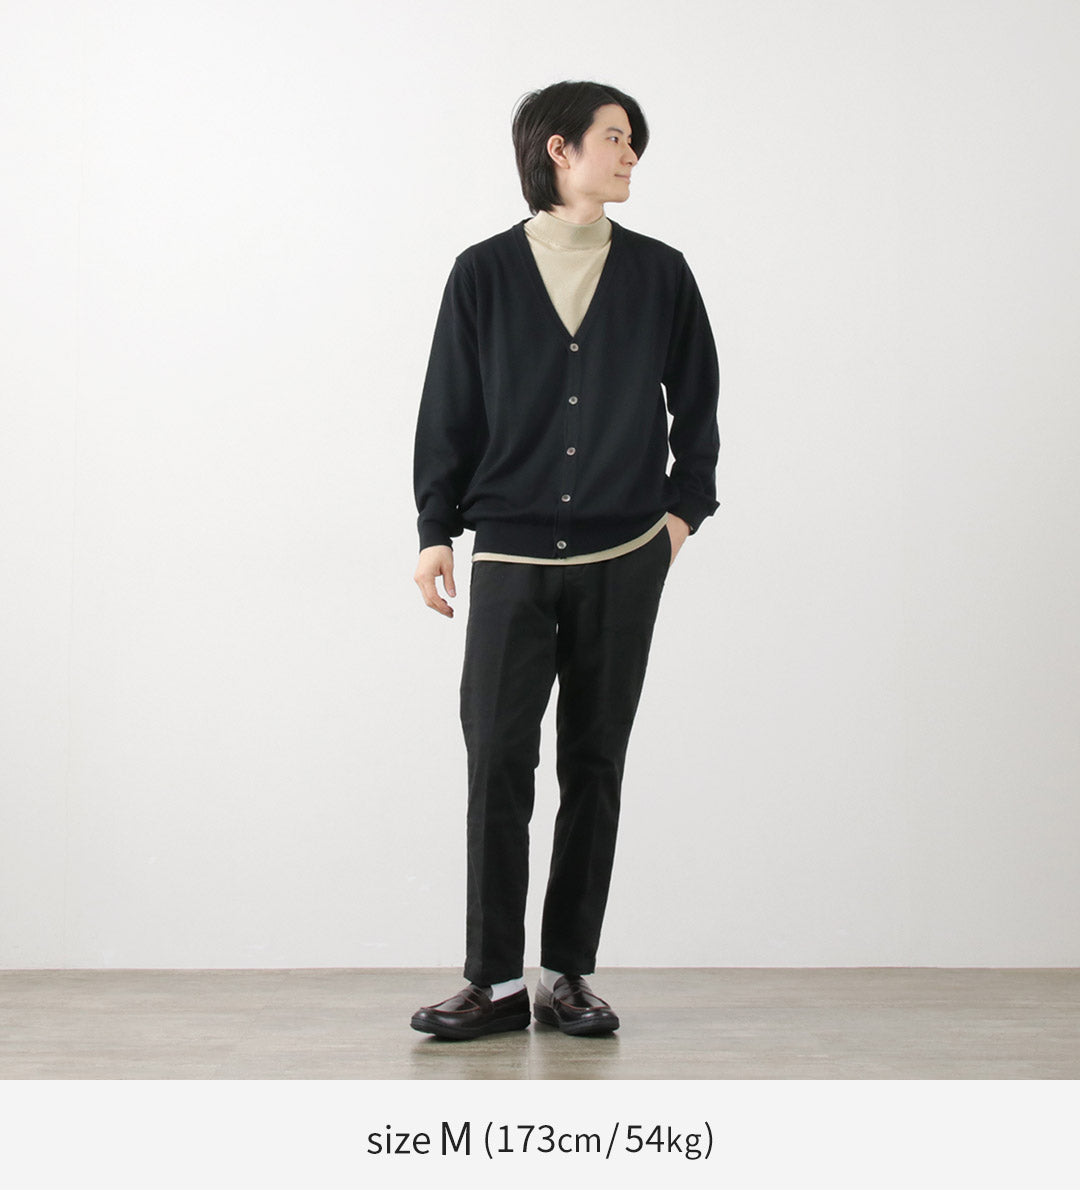 JOHN SMEDLEY（ジョンスメドレー） シーアイランドコットン 30ゲージ モックネック ニット / メンズ トップス Tシャツ 半袖 無地 綿 コットン 薄手 イギリス製 sea island cotton 30G mock neck knit